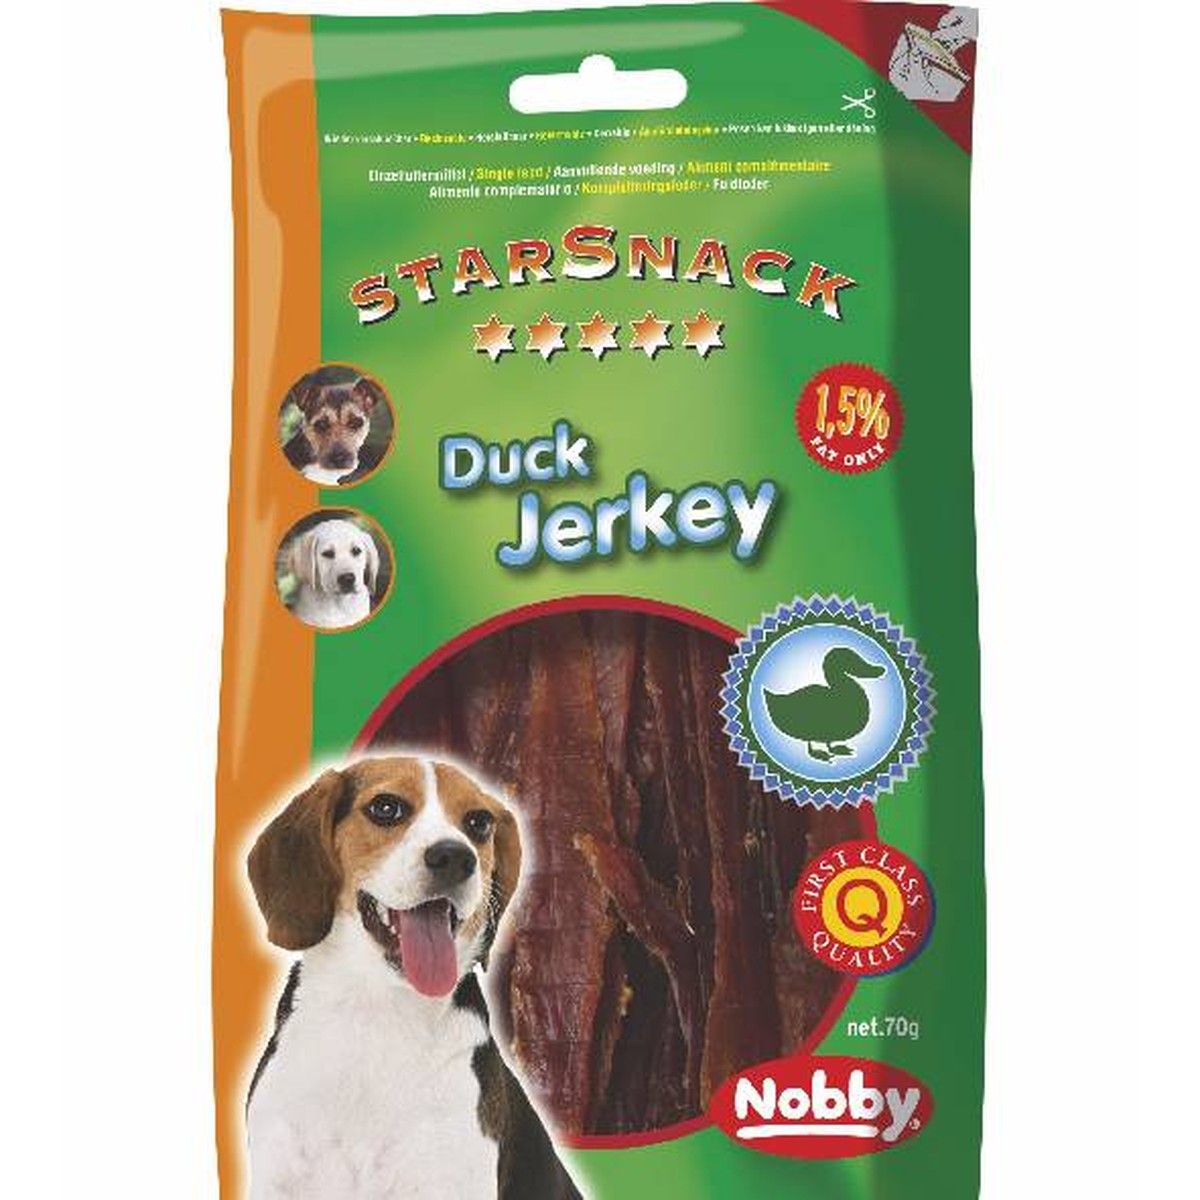   StarSnack Soft Duck Jerkey. 70 g  70g